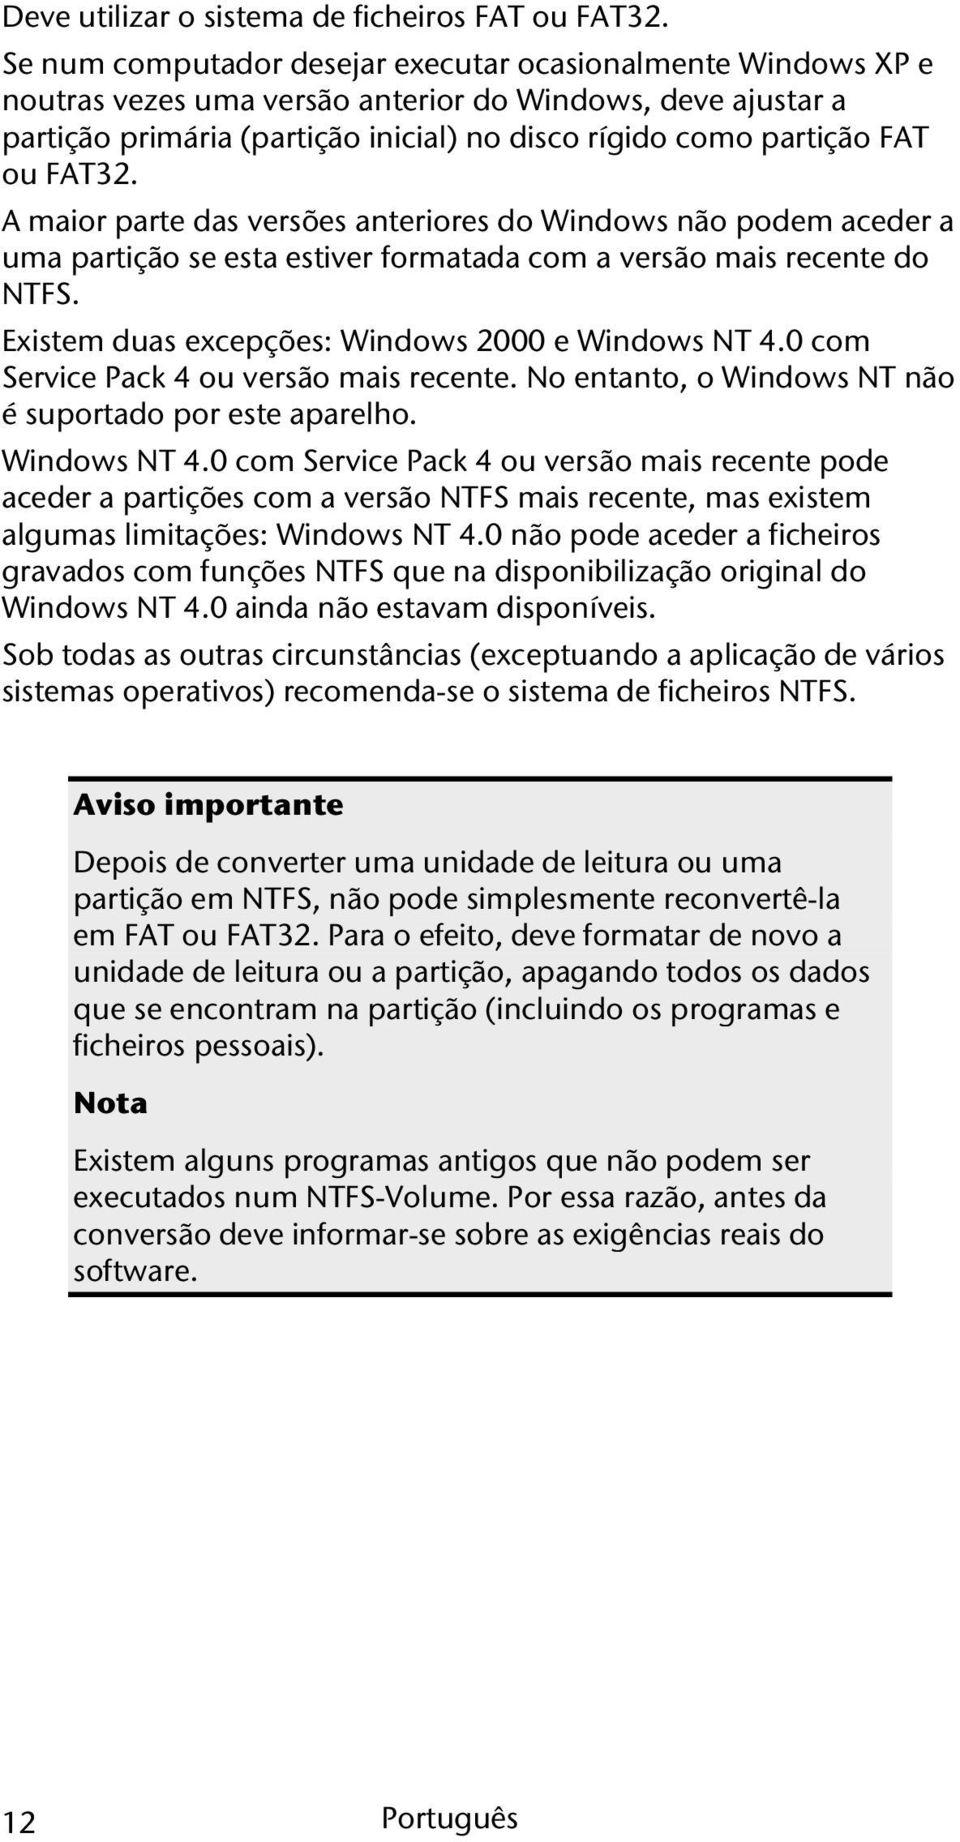 FAT32. A maior parte das versões anteriores do Windows não podem aceder a uma partição se esta estiver formatada com a versão mais recente do NTFS. Existem duas excepções: Windows 2000 e Windows NT 4.